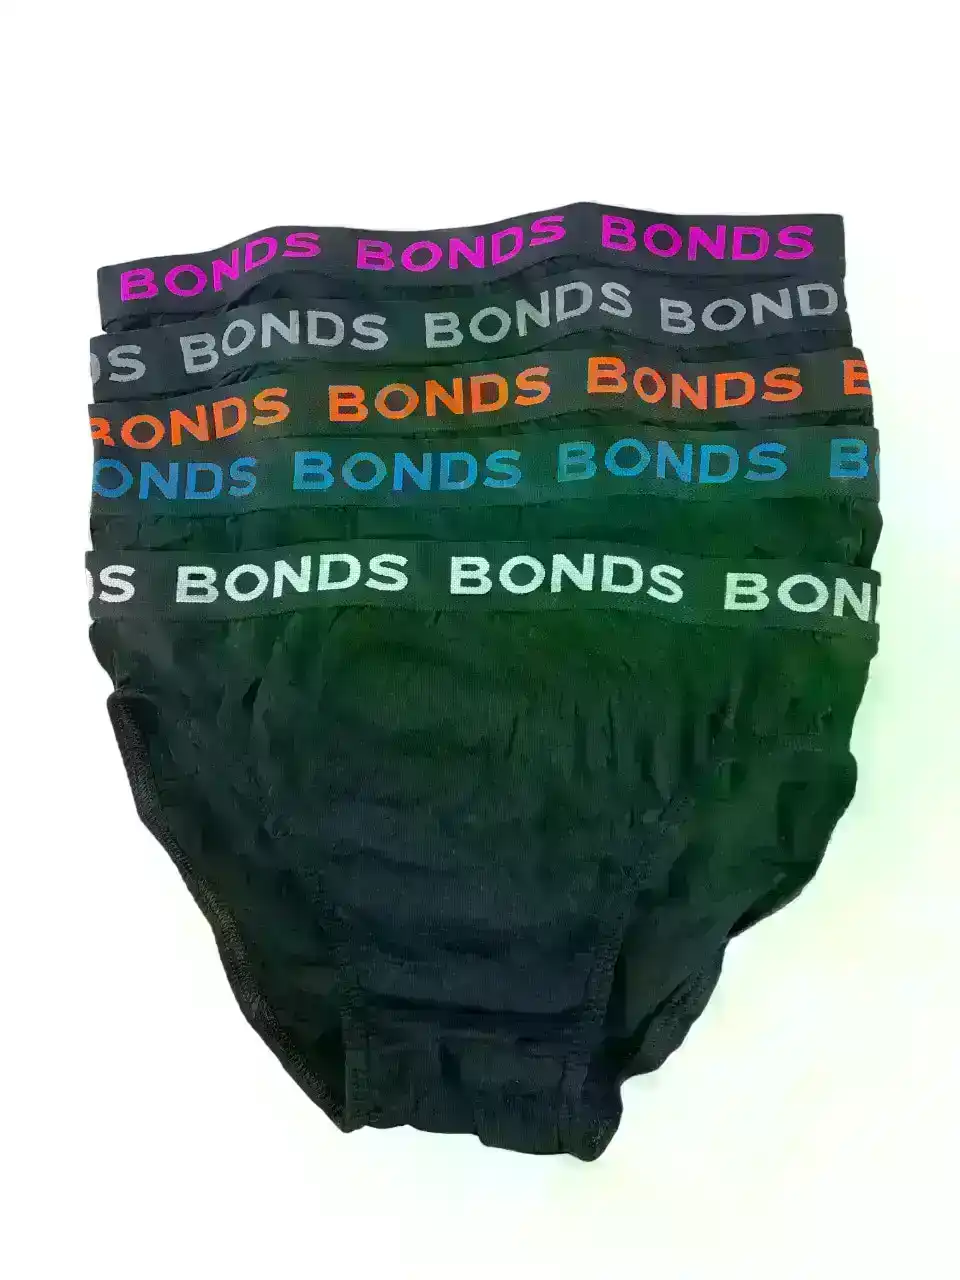 20 X Pairs Bonds Mens Hipster Brief Underwear Assorted 06K Pack, Australian Fashion Boutique